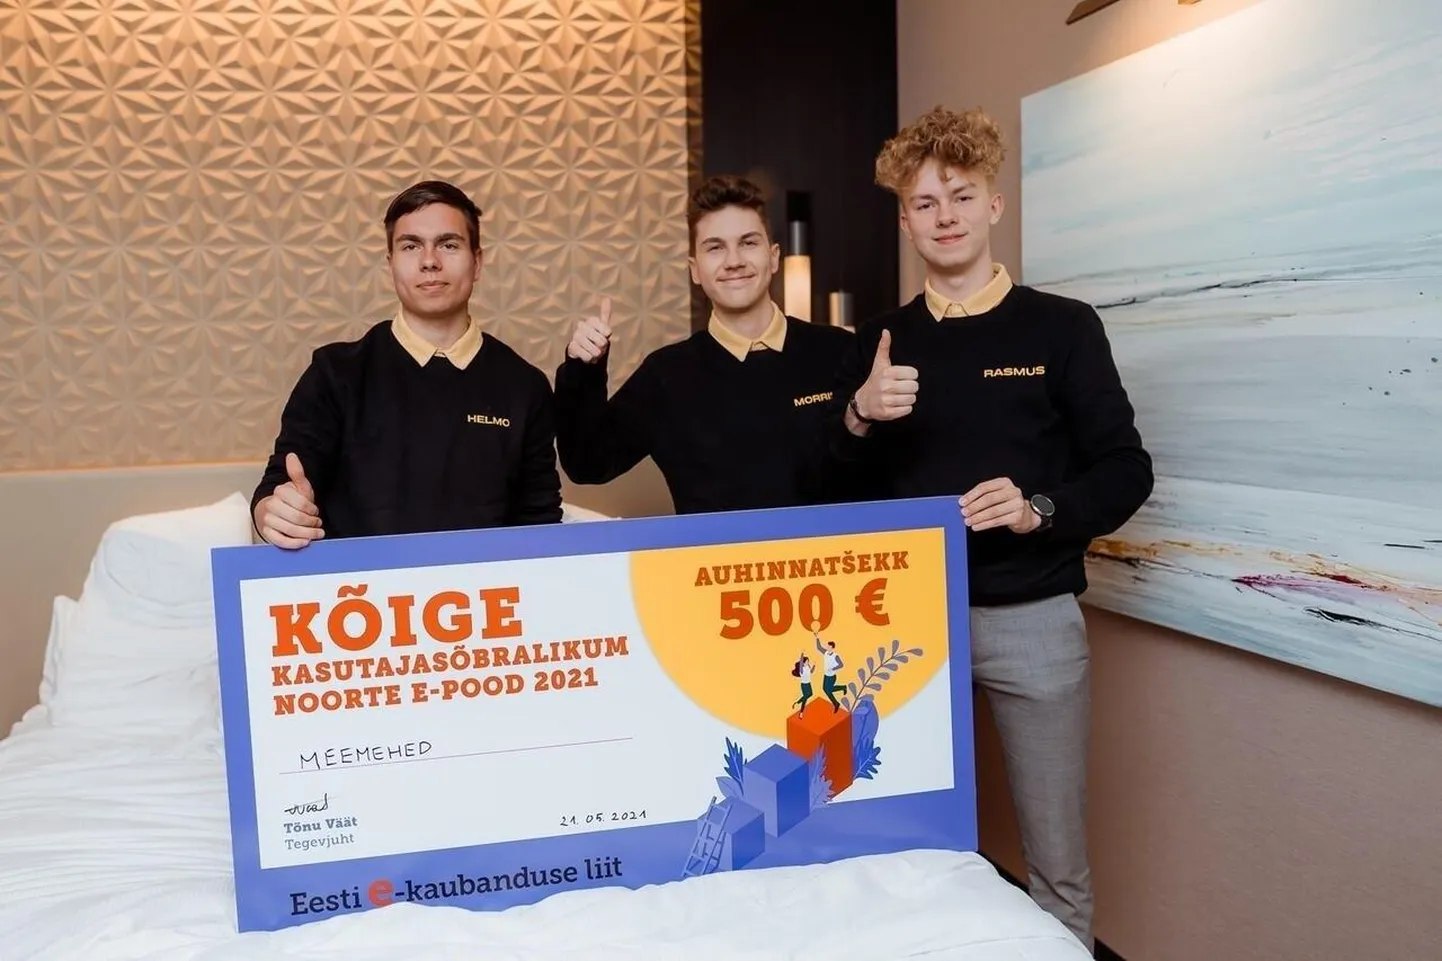 Meemehed ehk Helmo Oja (vasakult), Morris Tann ja Rasmus Susi. Lisaks nende maitsemeele tunnustati õpilasfirmade konkursil ka nende e-poodi.